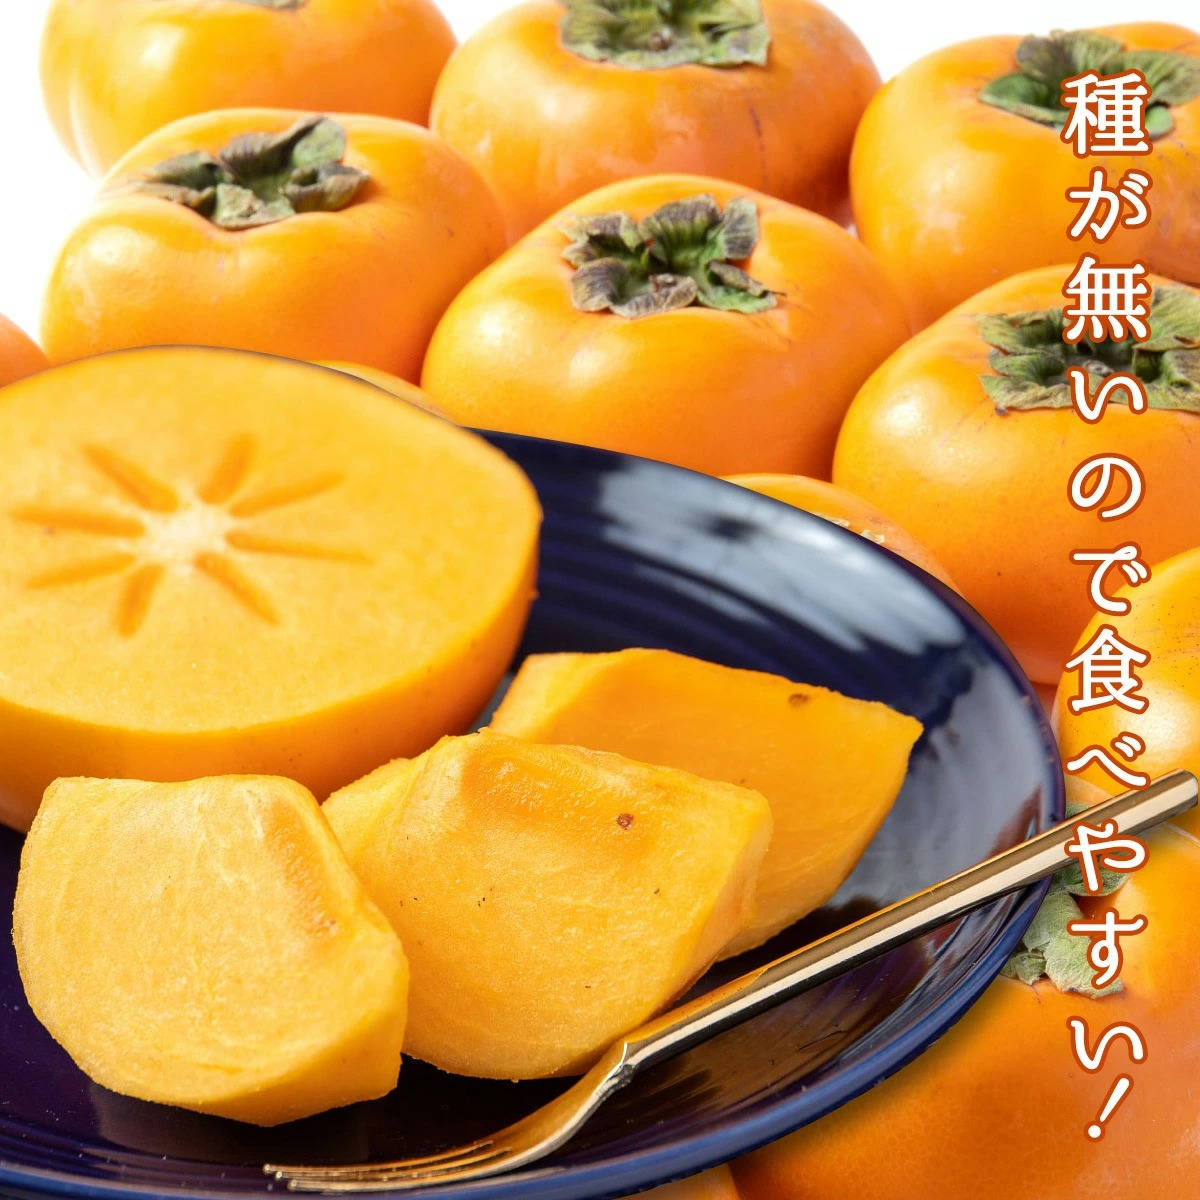 和歌山産 ”たねなし柿” 訳あり 約7.5kg 大きさおまかせ 送料無料